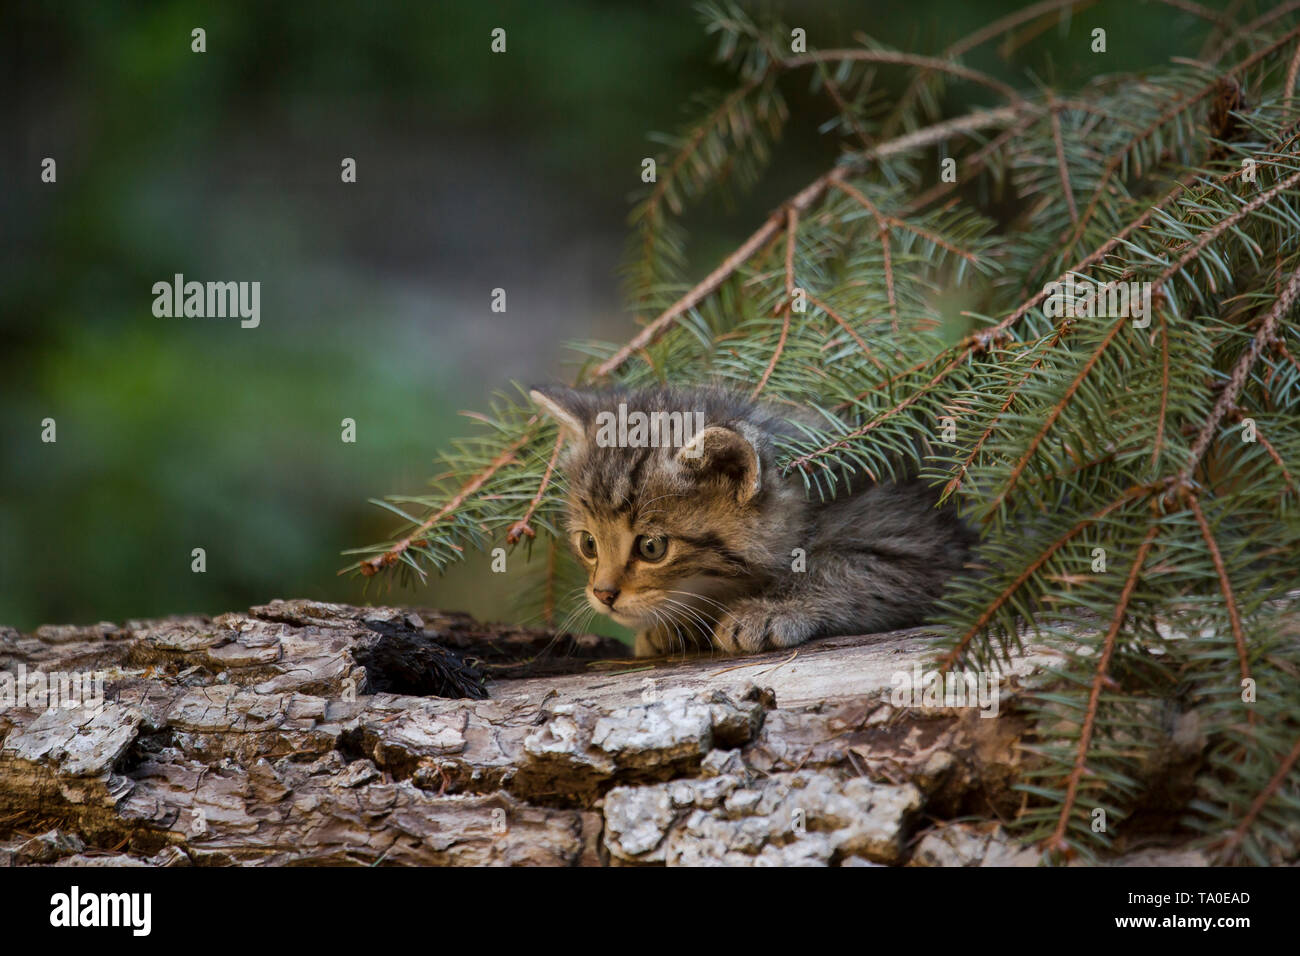 Die europäische Wildkatze (Felis Silvestris) - Kätzchen spielen auf einen umgestürzten Baumstamm, versteckt unter einigen Tannenbaum Äste in der Nähe seiner Höhle. Stockfoto